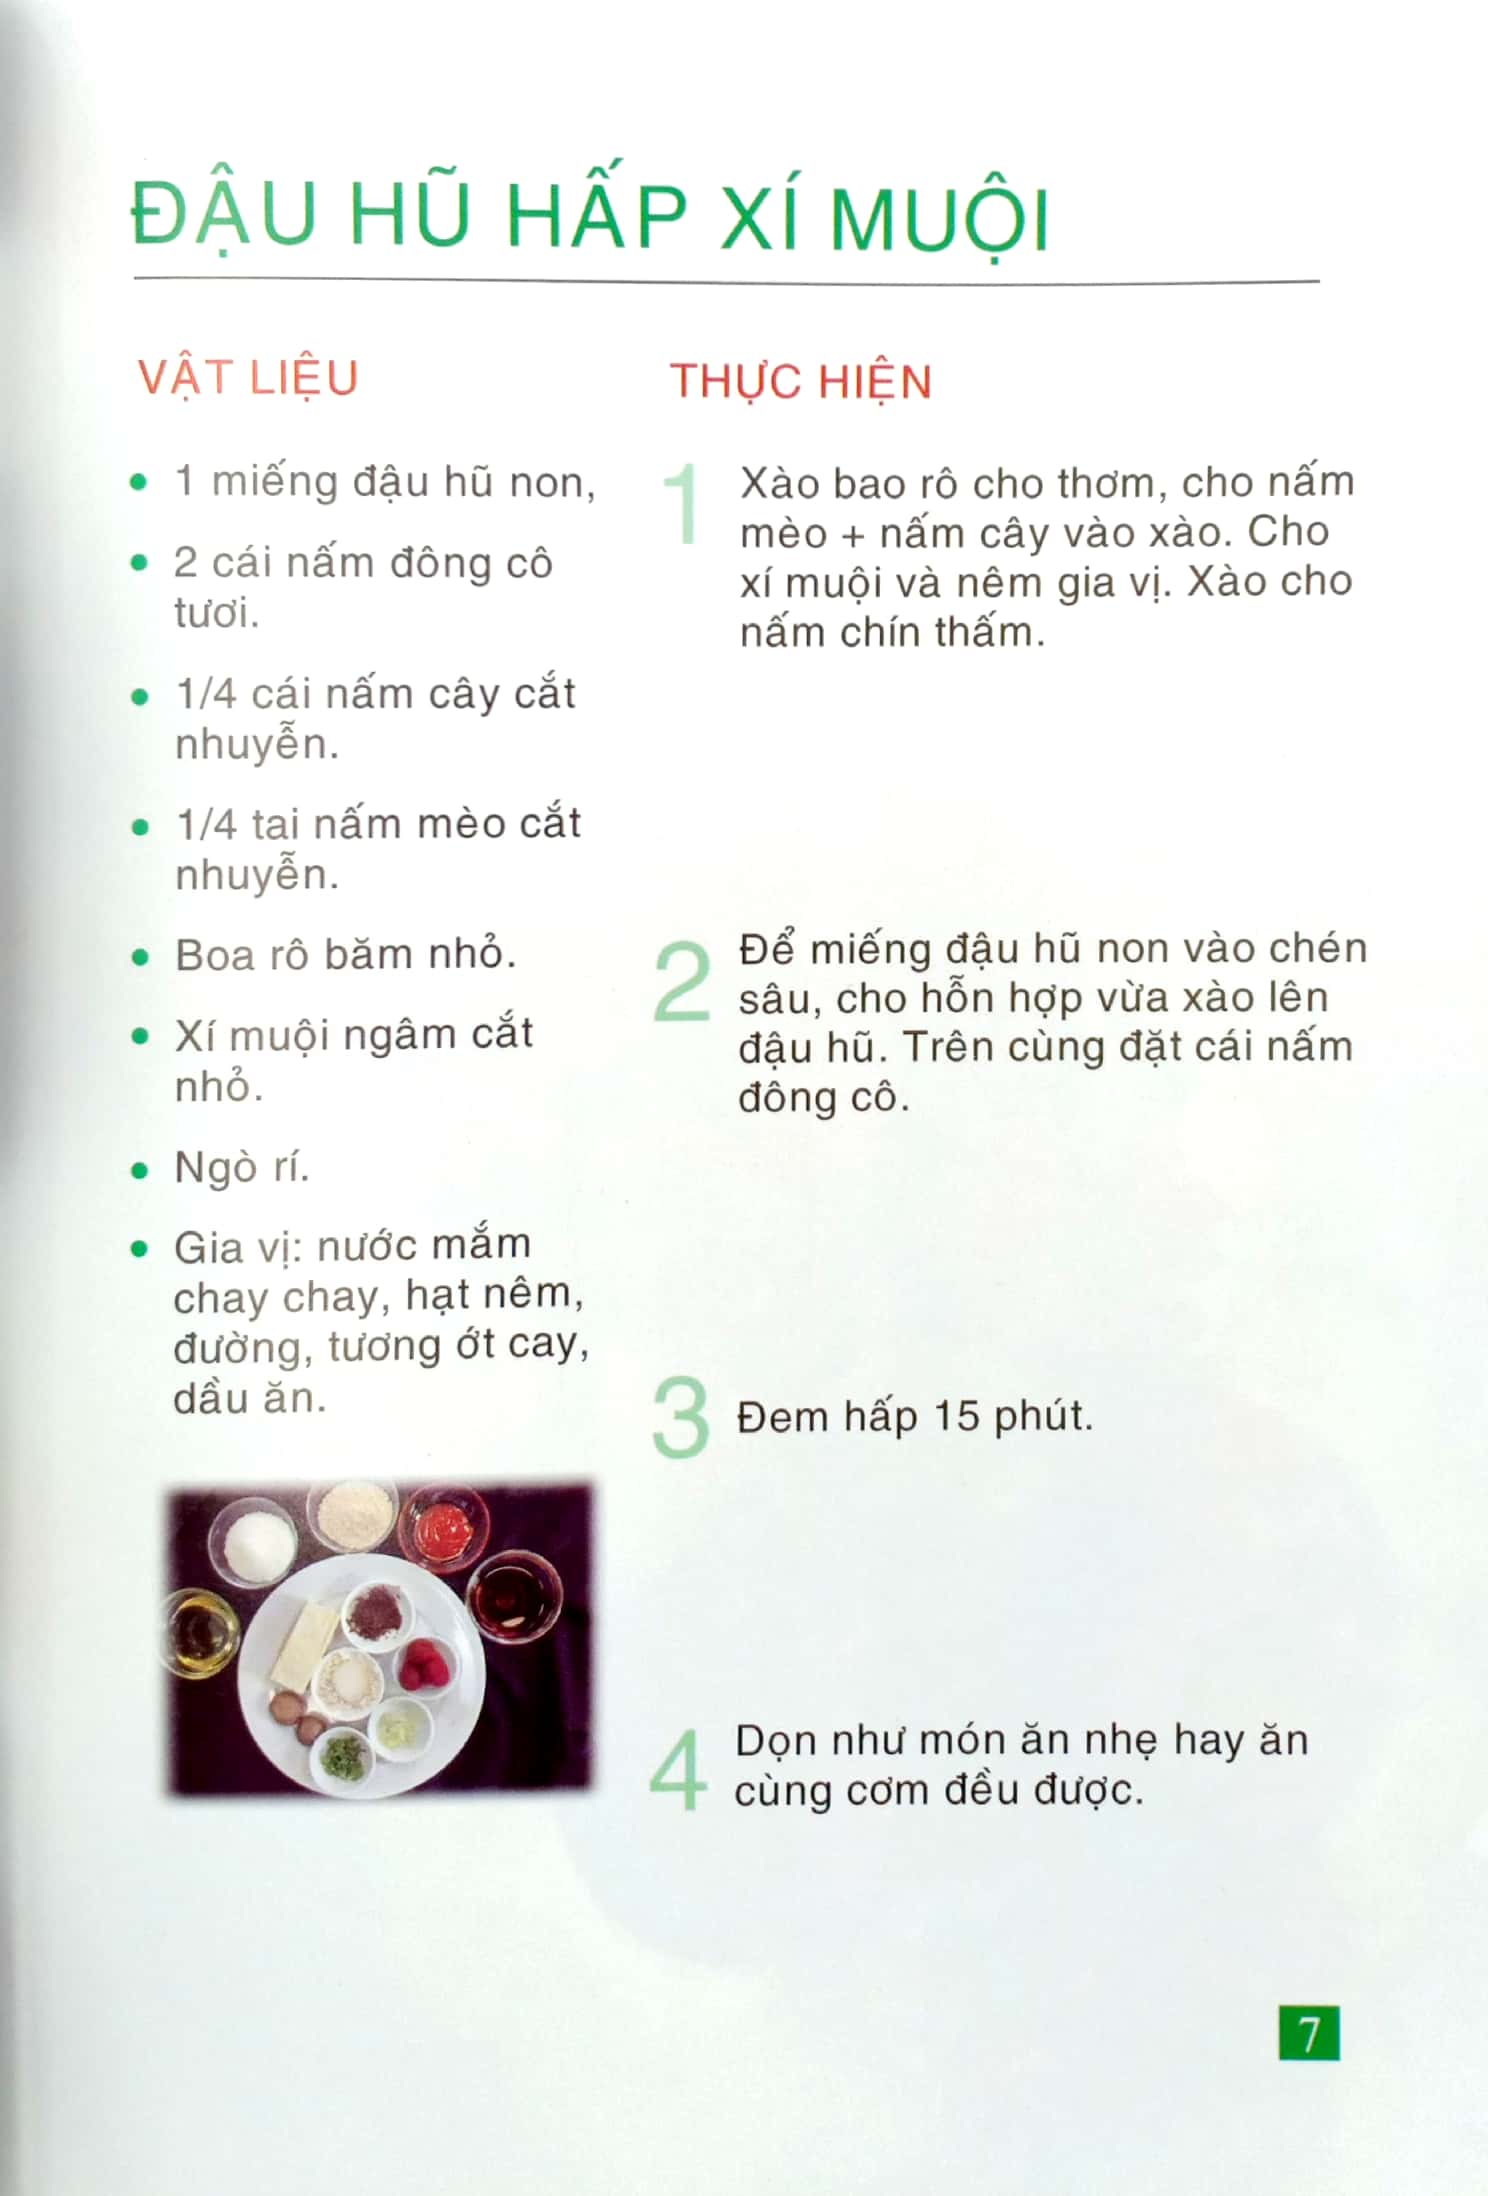 500 Món Chay Thanh Tịnh - Tập 15 PDF